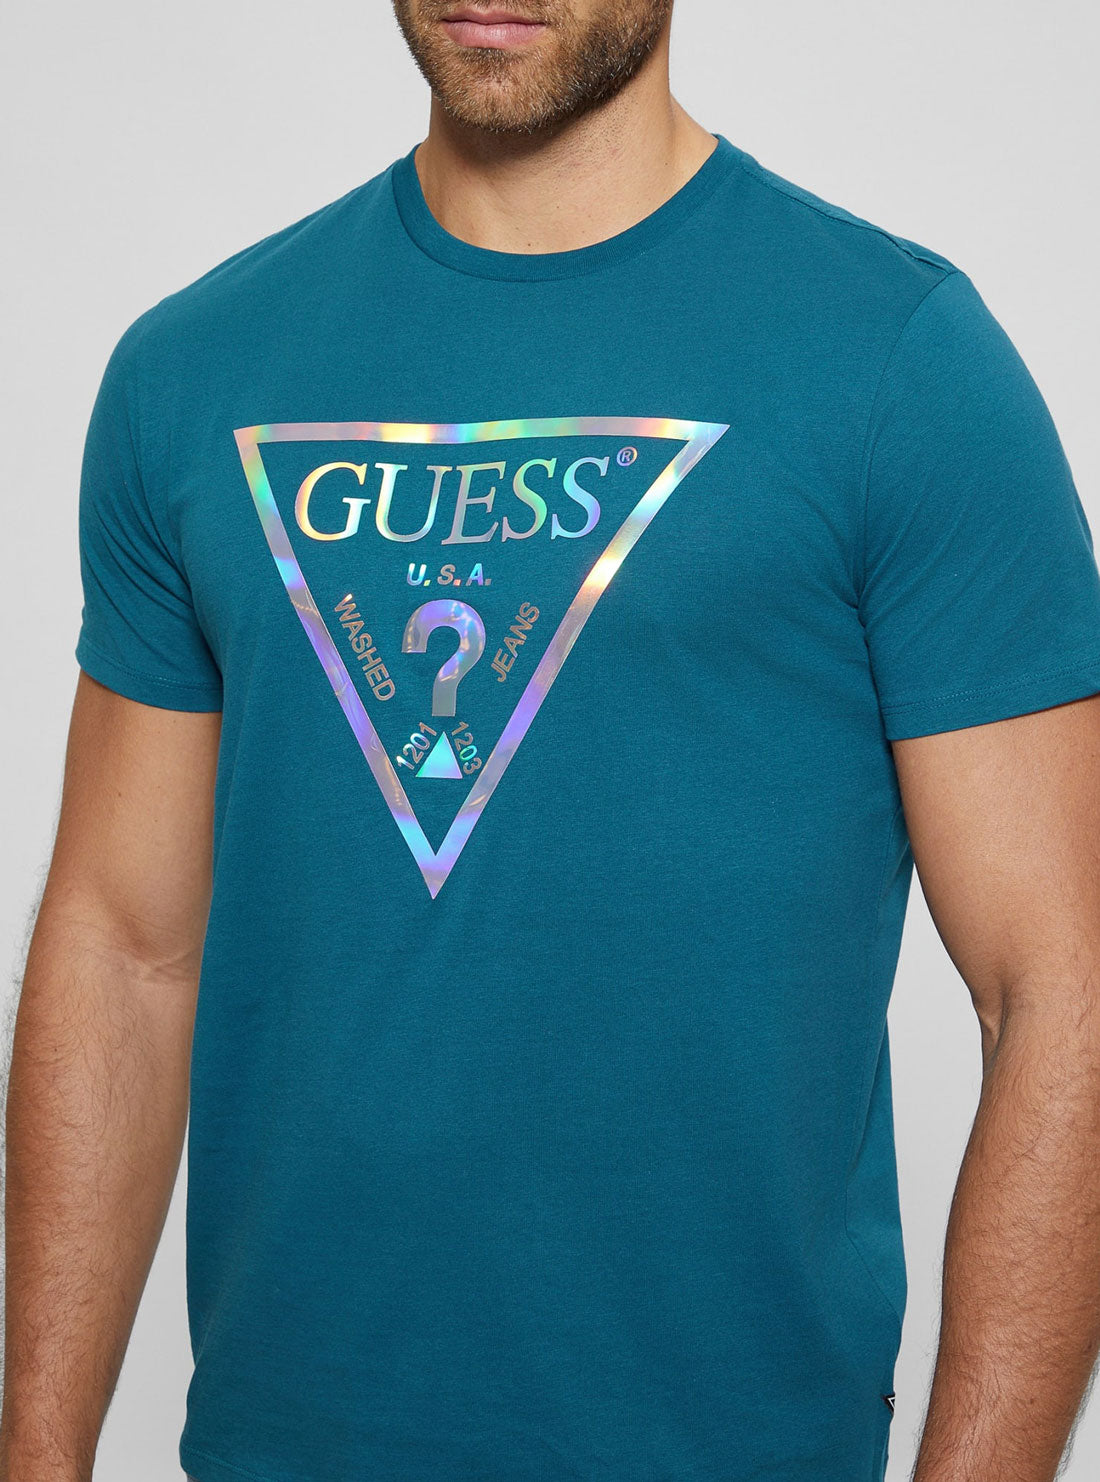 Teal Blue Iridescent Logo T-Shirt | GUESS Men's Apparel | detail view